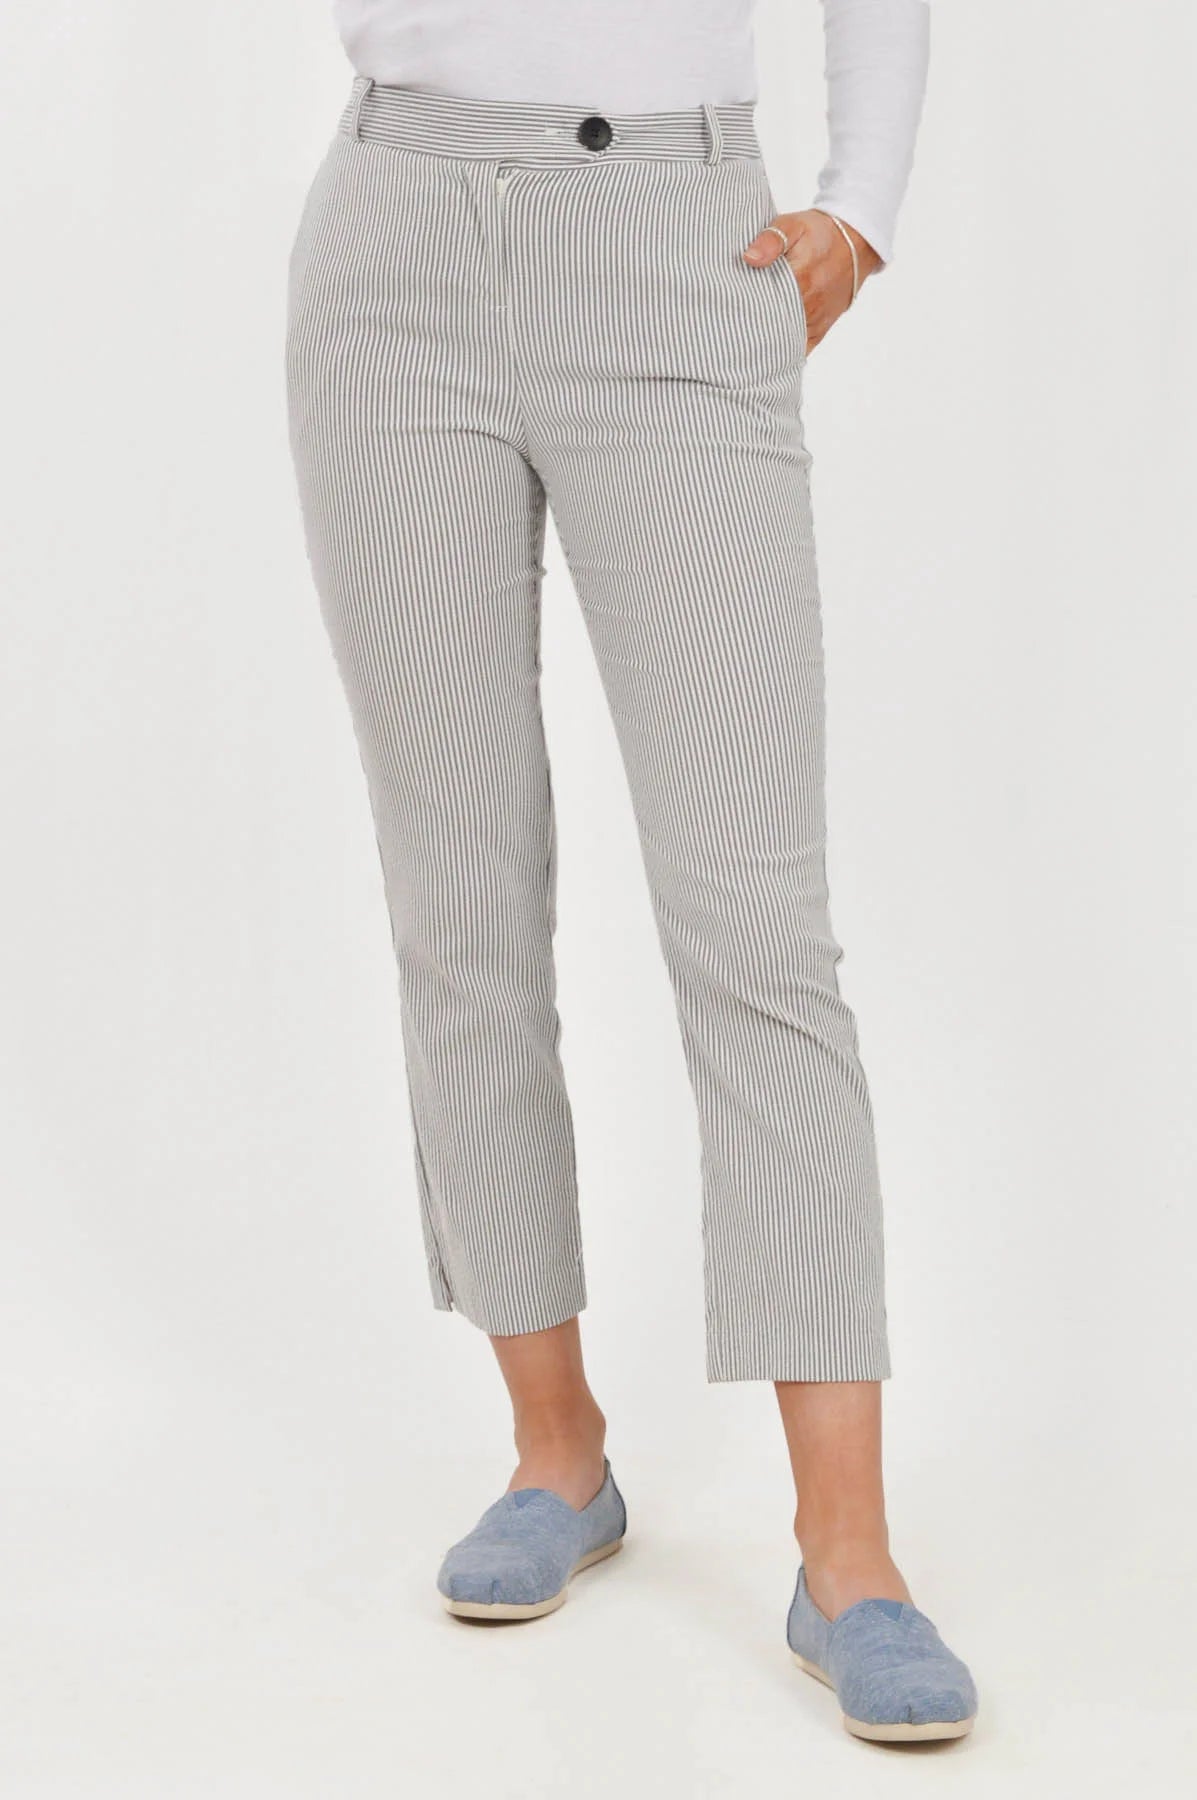 Secret Label Grey Stripe Crop Trousers / 6 / Reg